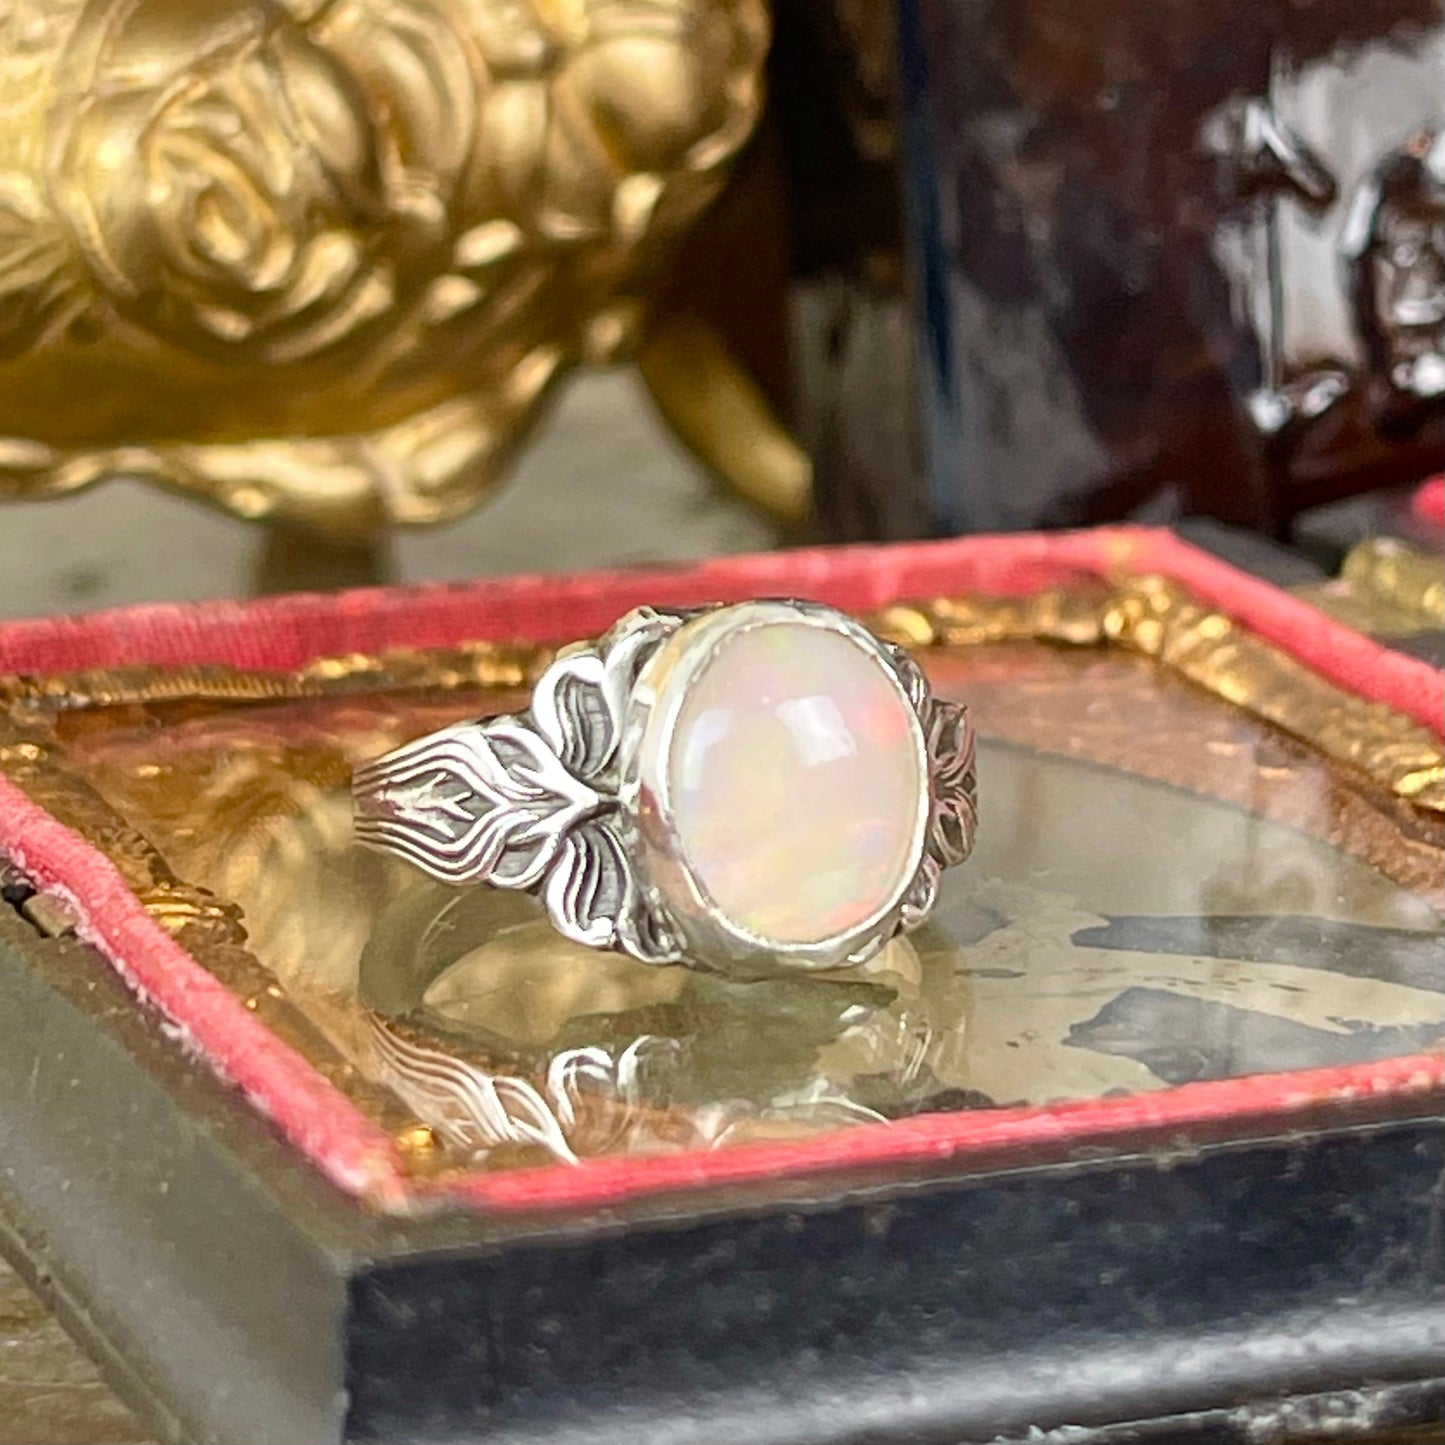 { Fleur } Floral Art Nouveau Opal Sterling Ring